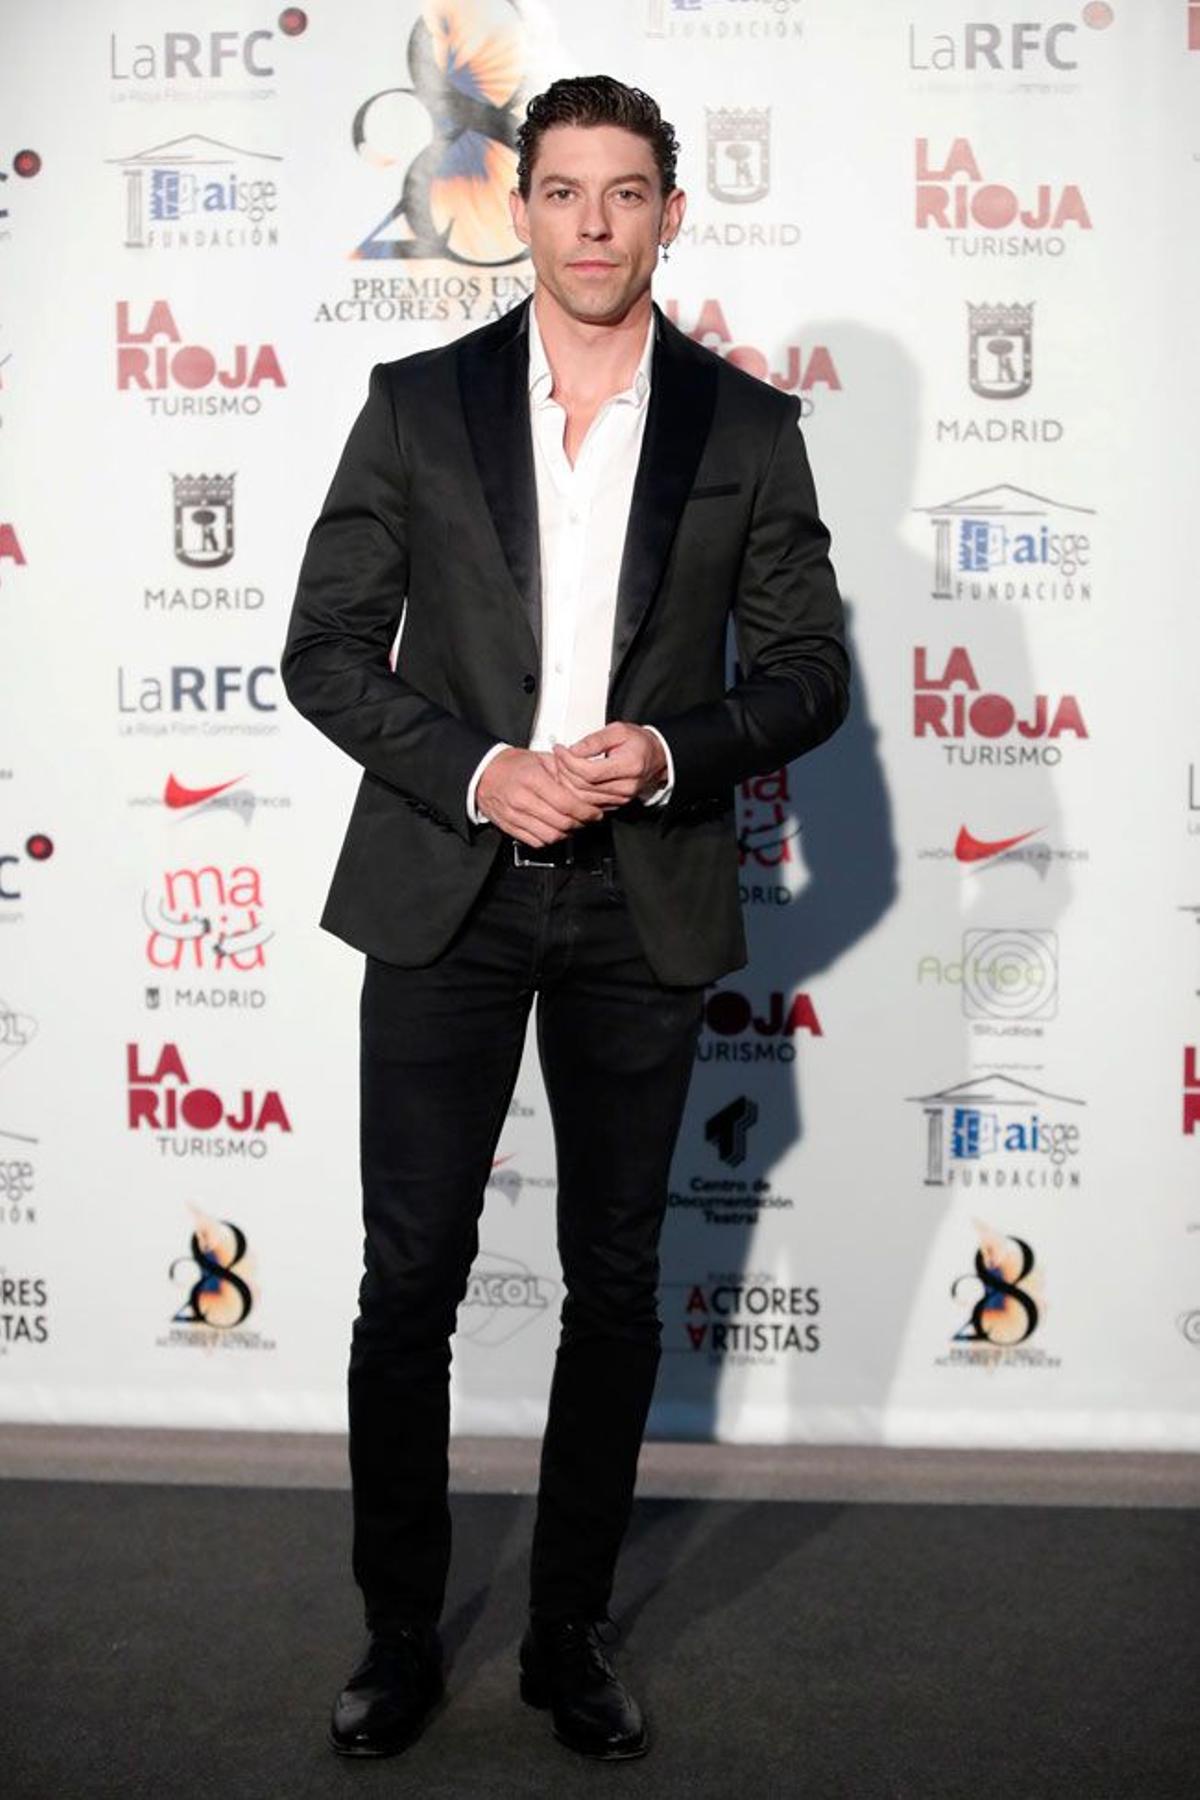 Premios Unión de Actores, Adrián Lastras